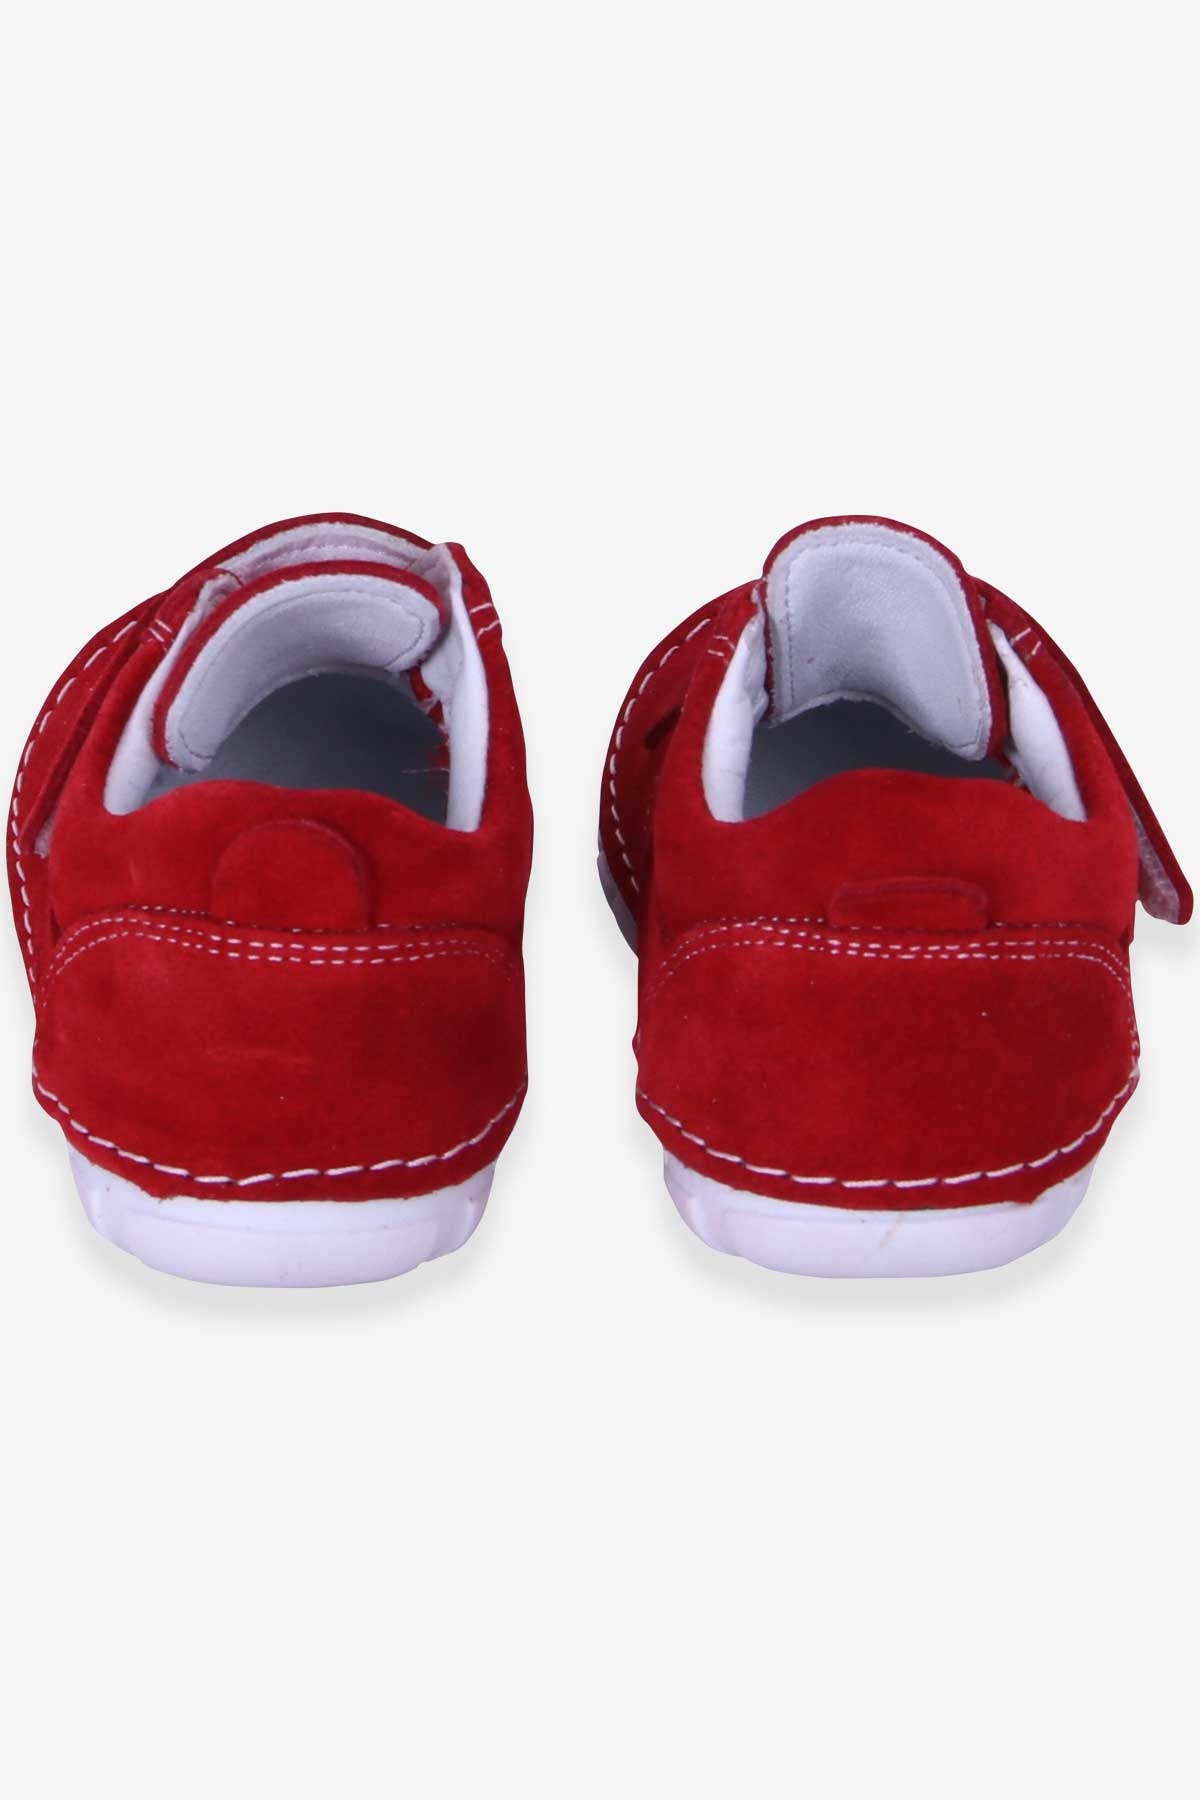 Kız Çocuk Cırtlı Süet Ayakkabı Kırmızı 22 Numara - Tatlı Modeller | Breeze